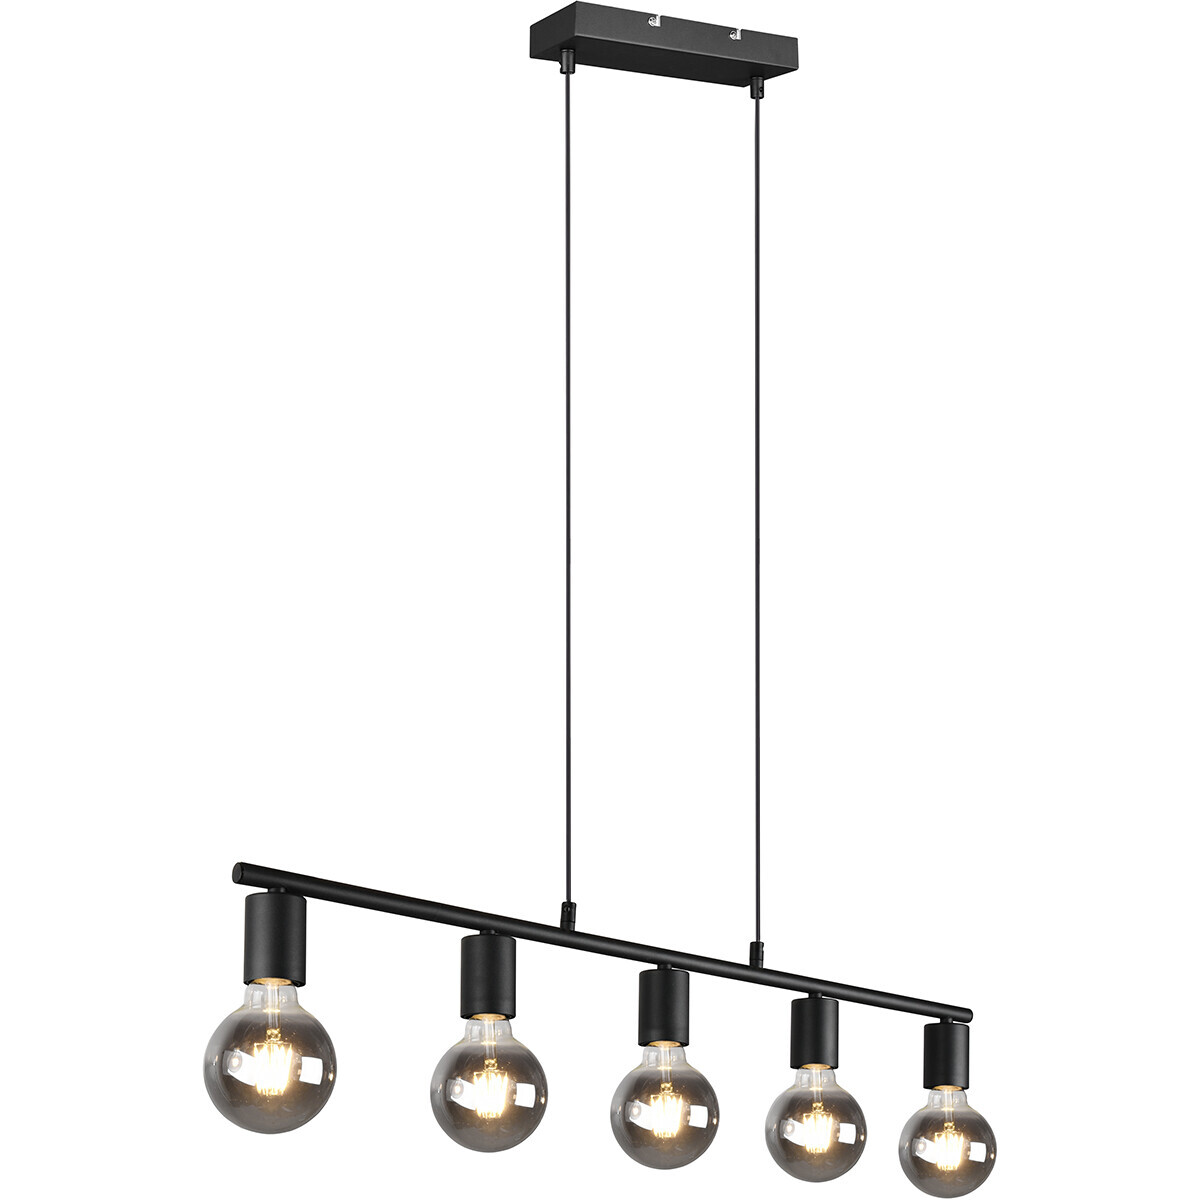 BES LED LED Hanglamp - Trion Zuncka - E27 Fitting - 5-lichts - Rechthoek - Mat Zwart - Aluminium